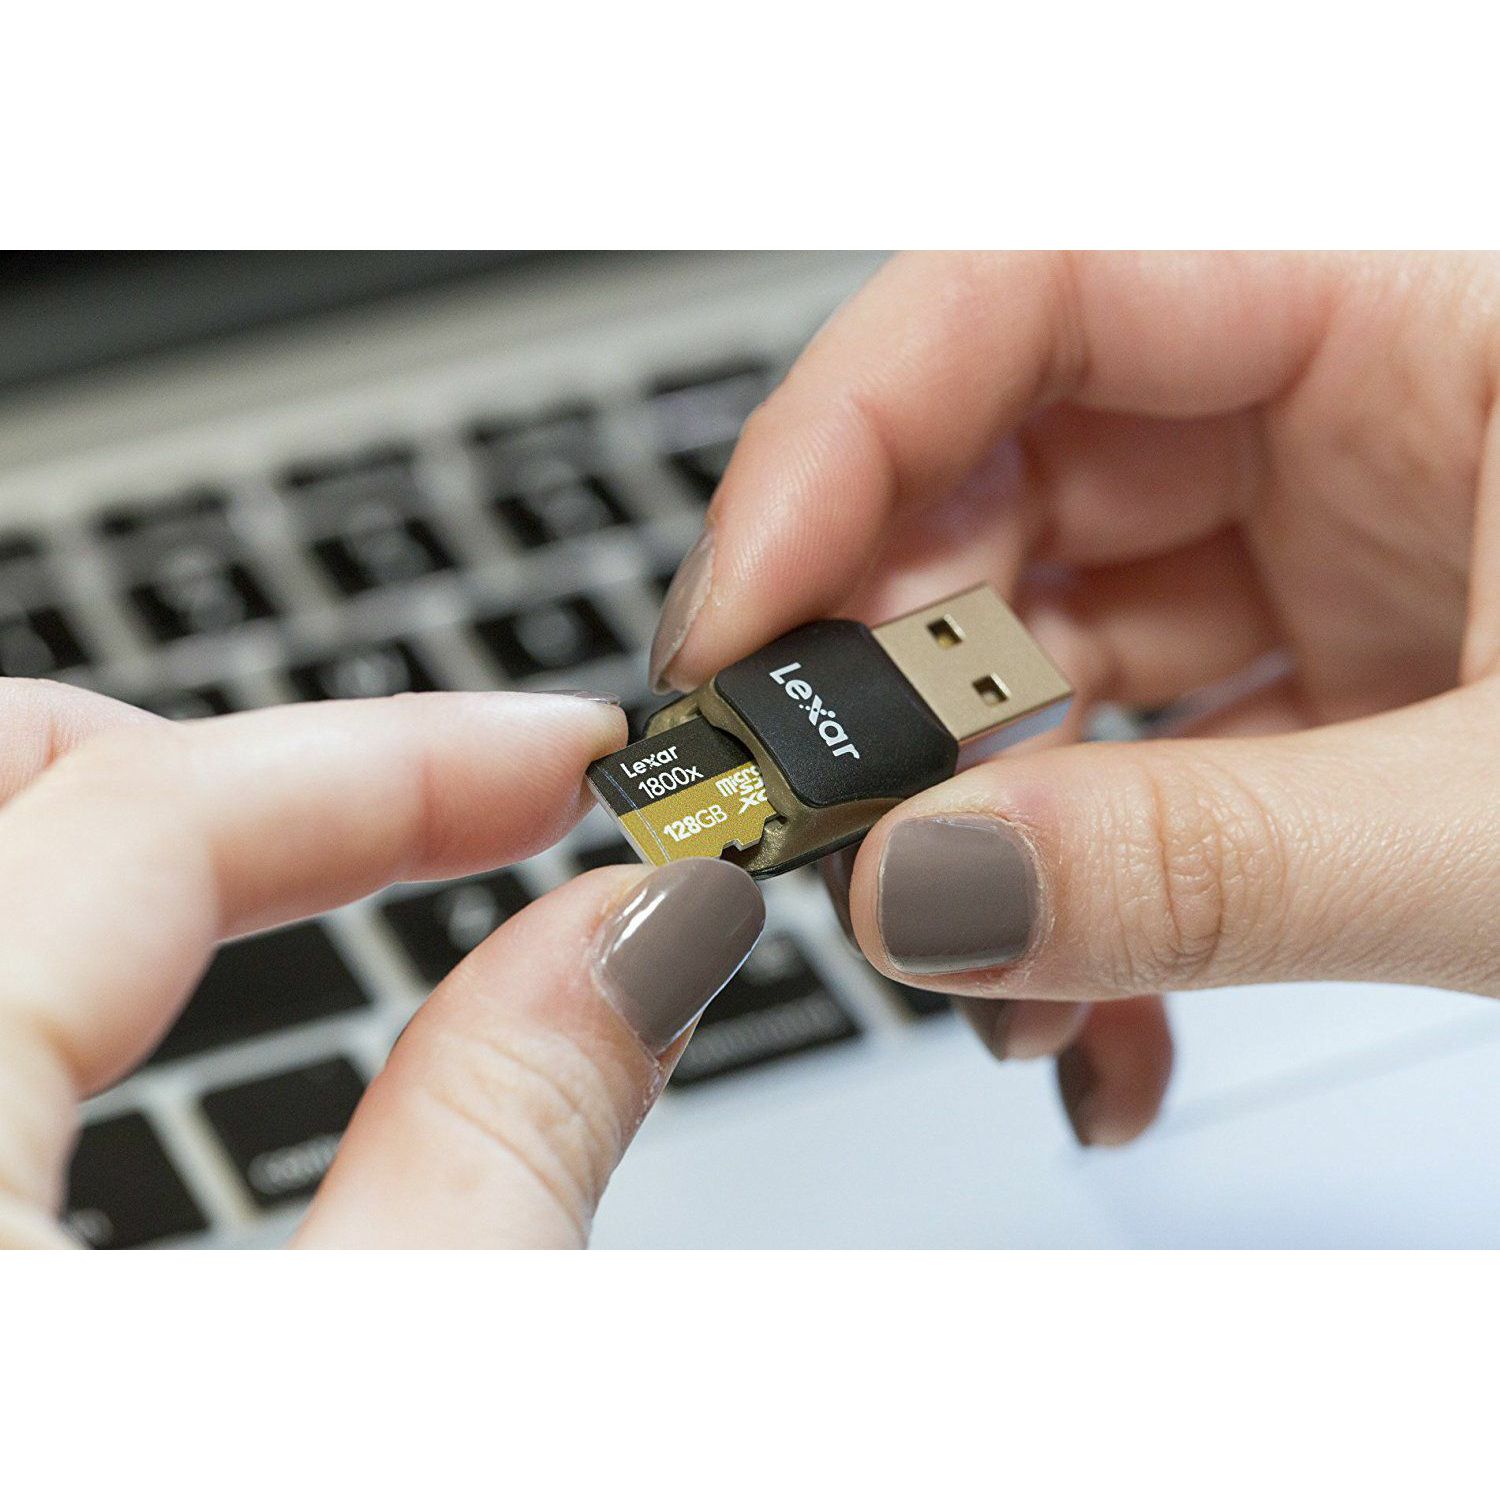 Lexar microSDXC 64GB 1800x 270MB/s UHS-II USB 3.0 Reader + adapter memorijska kartica sa adapterom LSDMI64GCRBEU1800R